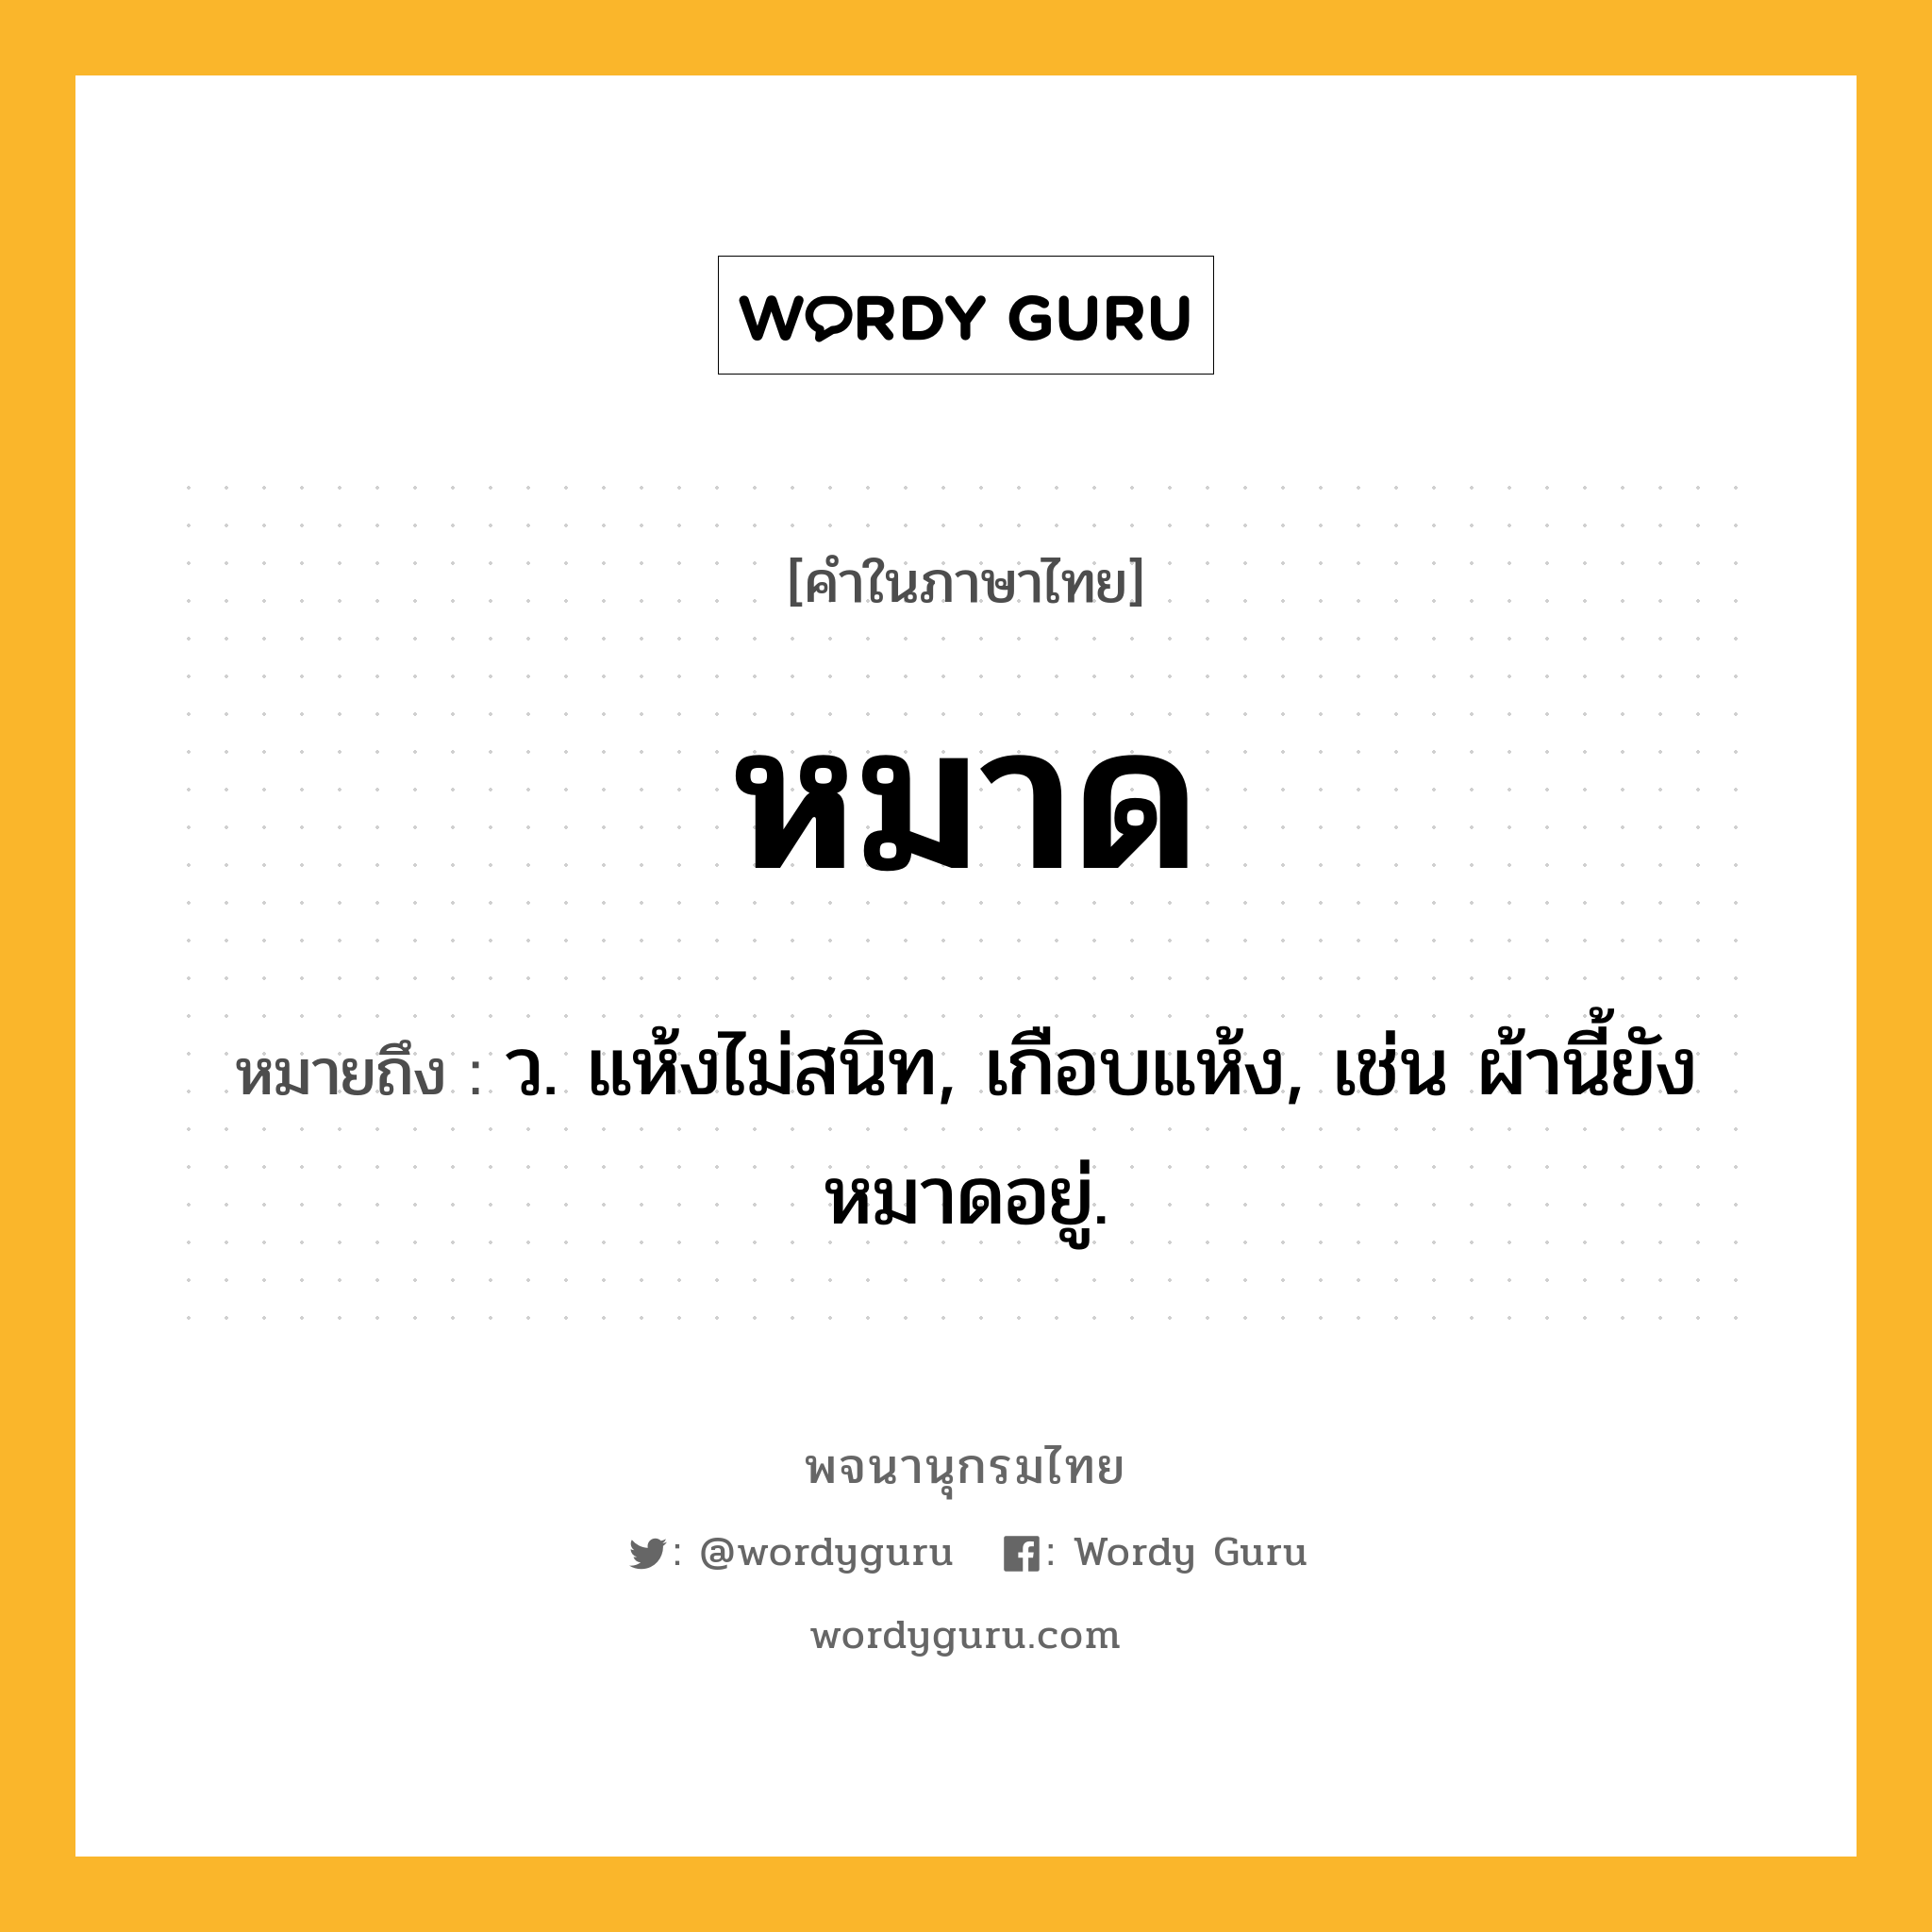 หมาด หมายถึงอะไร?, คำในภาษาไทย หมาด หมายถึง ว. แห้งไม่สนิท, เกือบแห้ง, เช่น ผ้านี้ยังหมาดอยู่.